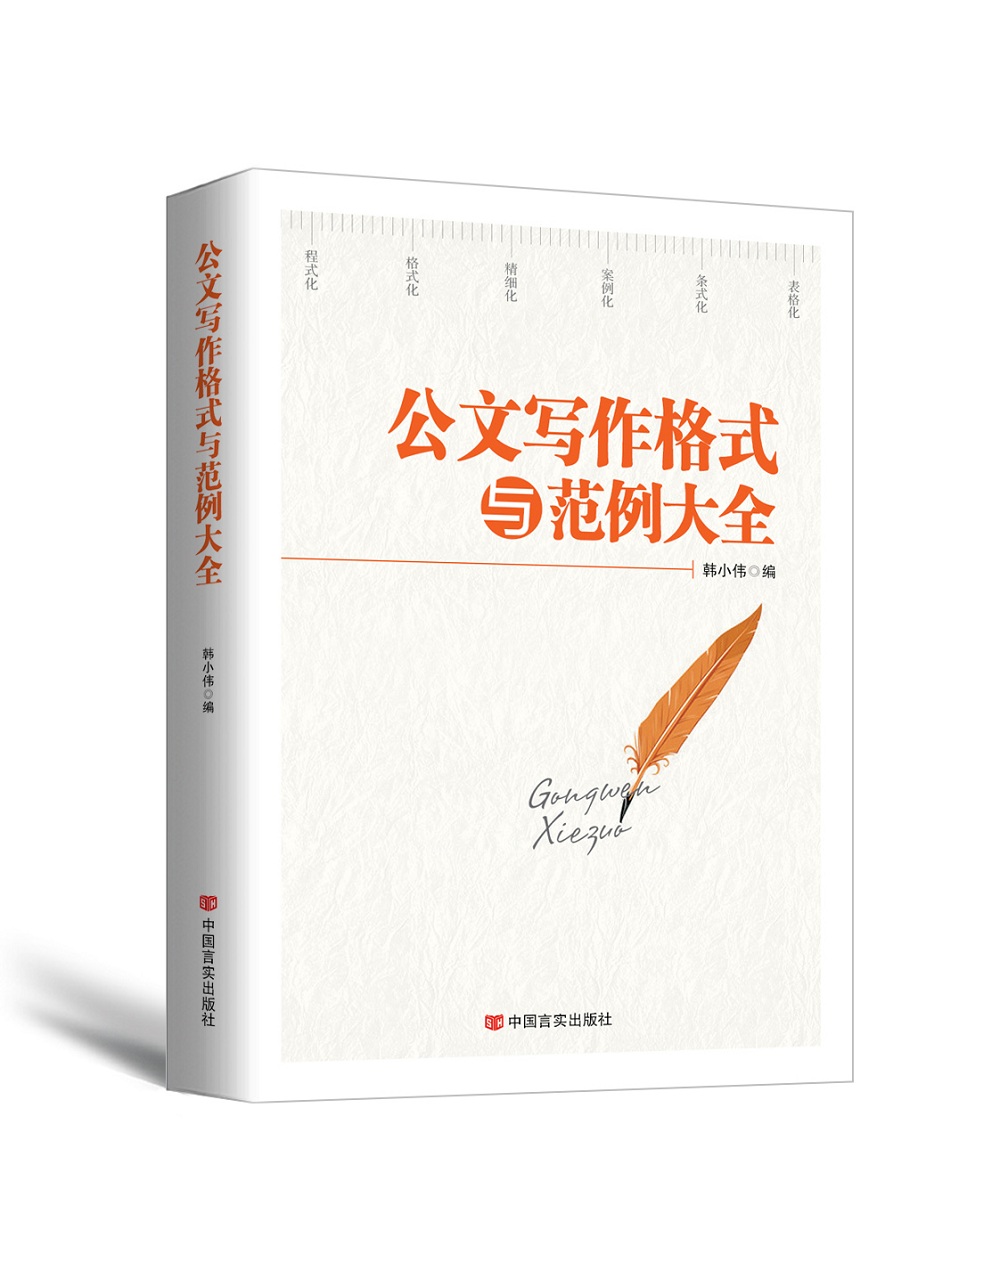 开启文笔艺术的新纪元-时代华语国际|语言文字商品历史价格查询网